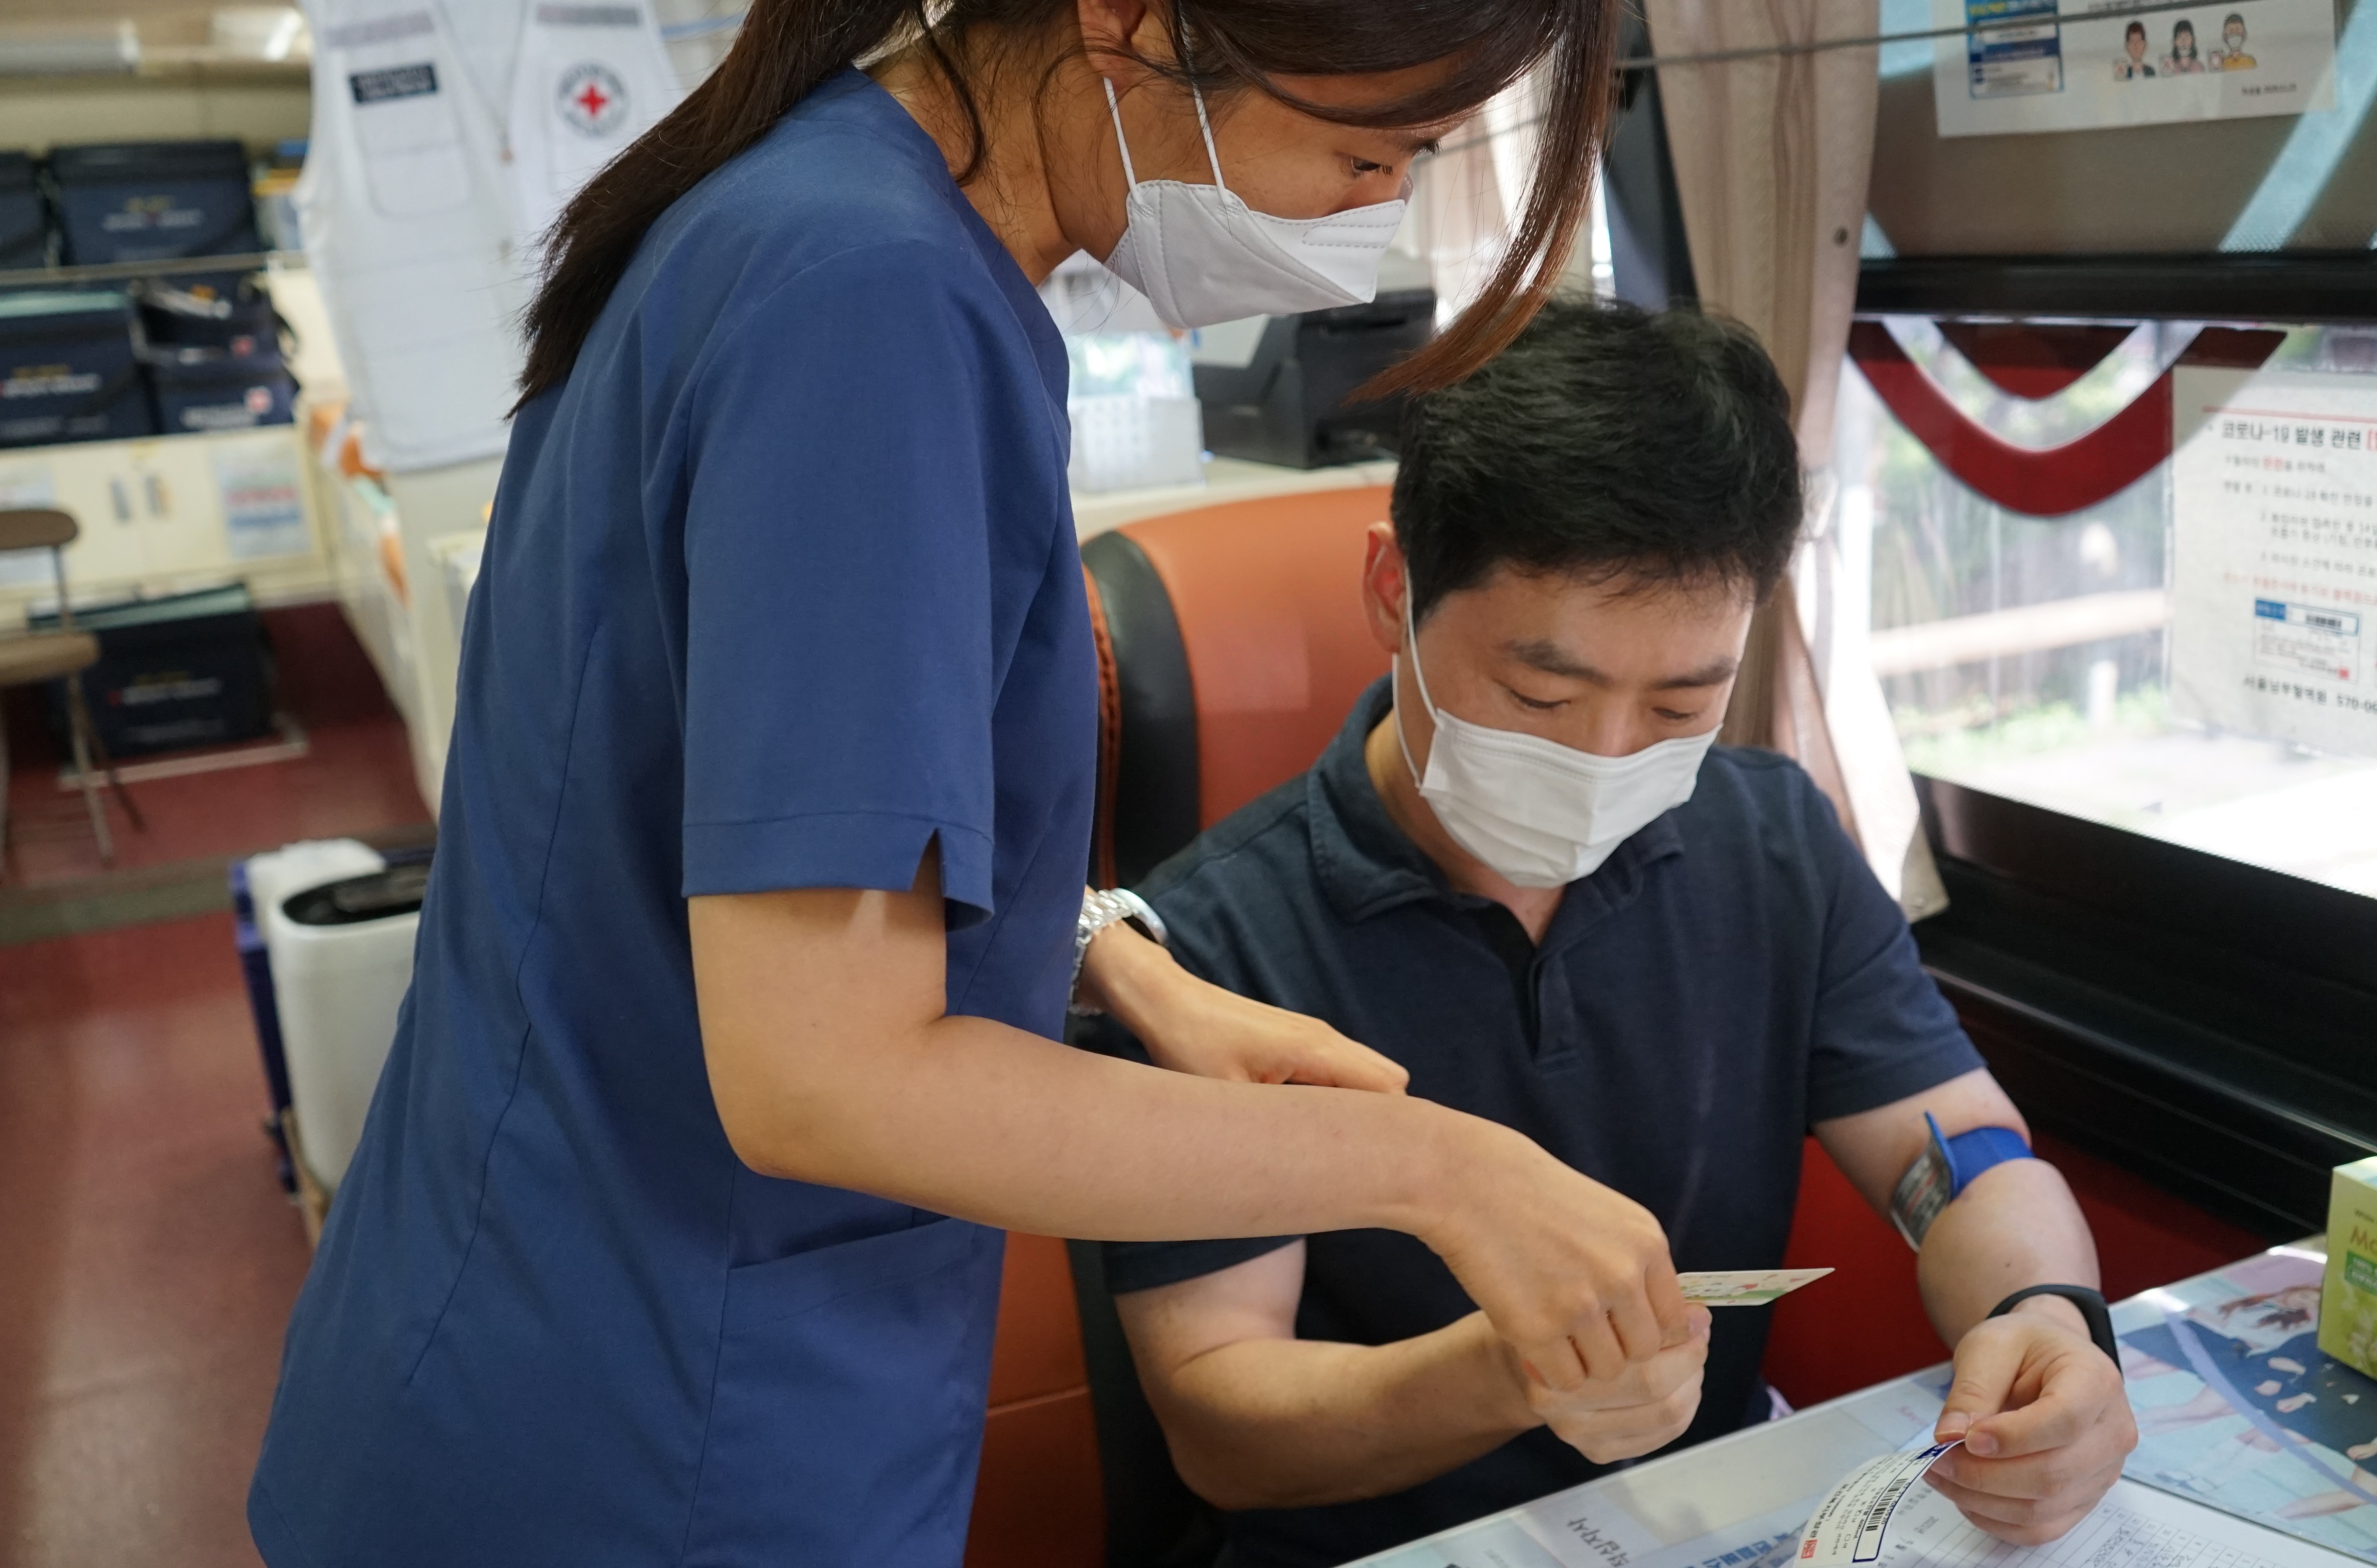 3일 한강유역환경청에서 열린 생명나눔 헌혈에 참여한 직원이 헌혈증서를 기부하고 있다.